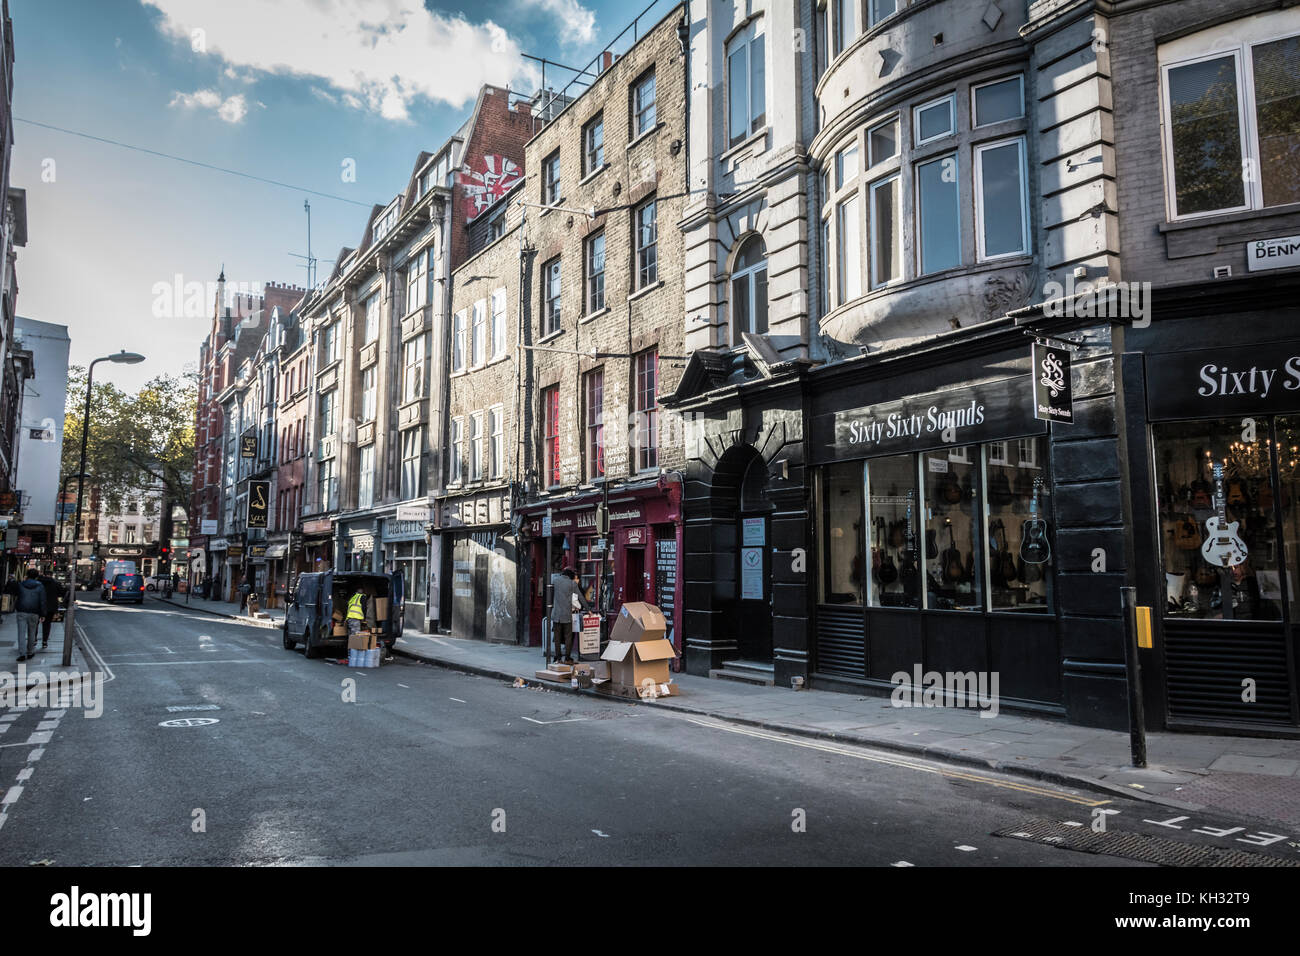 60 60 Sounds auf Denmark Street, alias Tin Pan Alley, London, UK Stockfoto